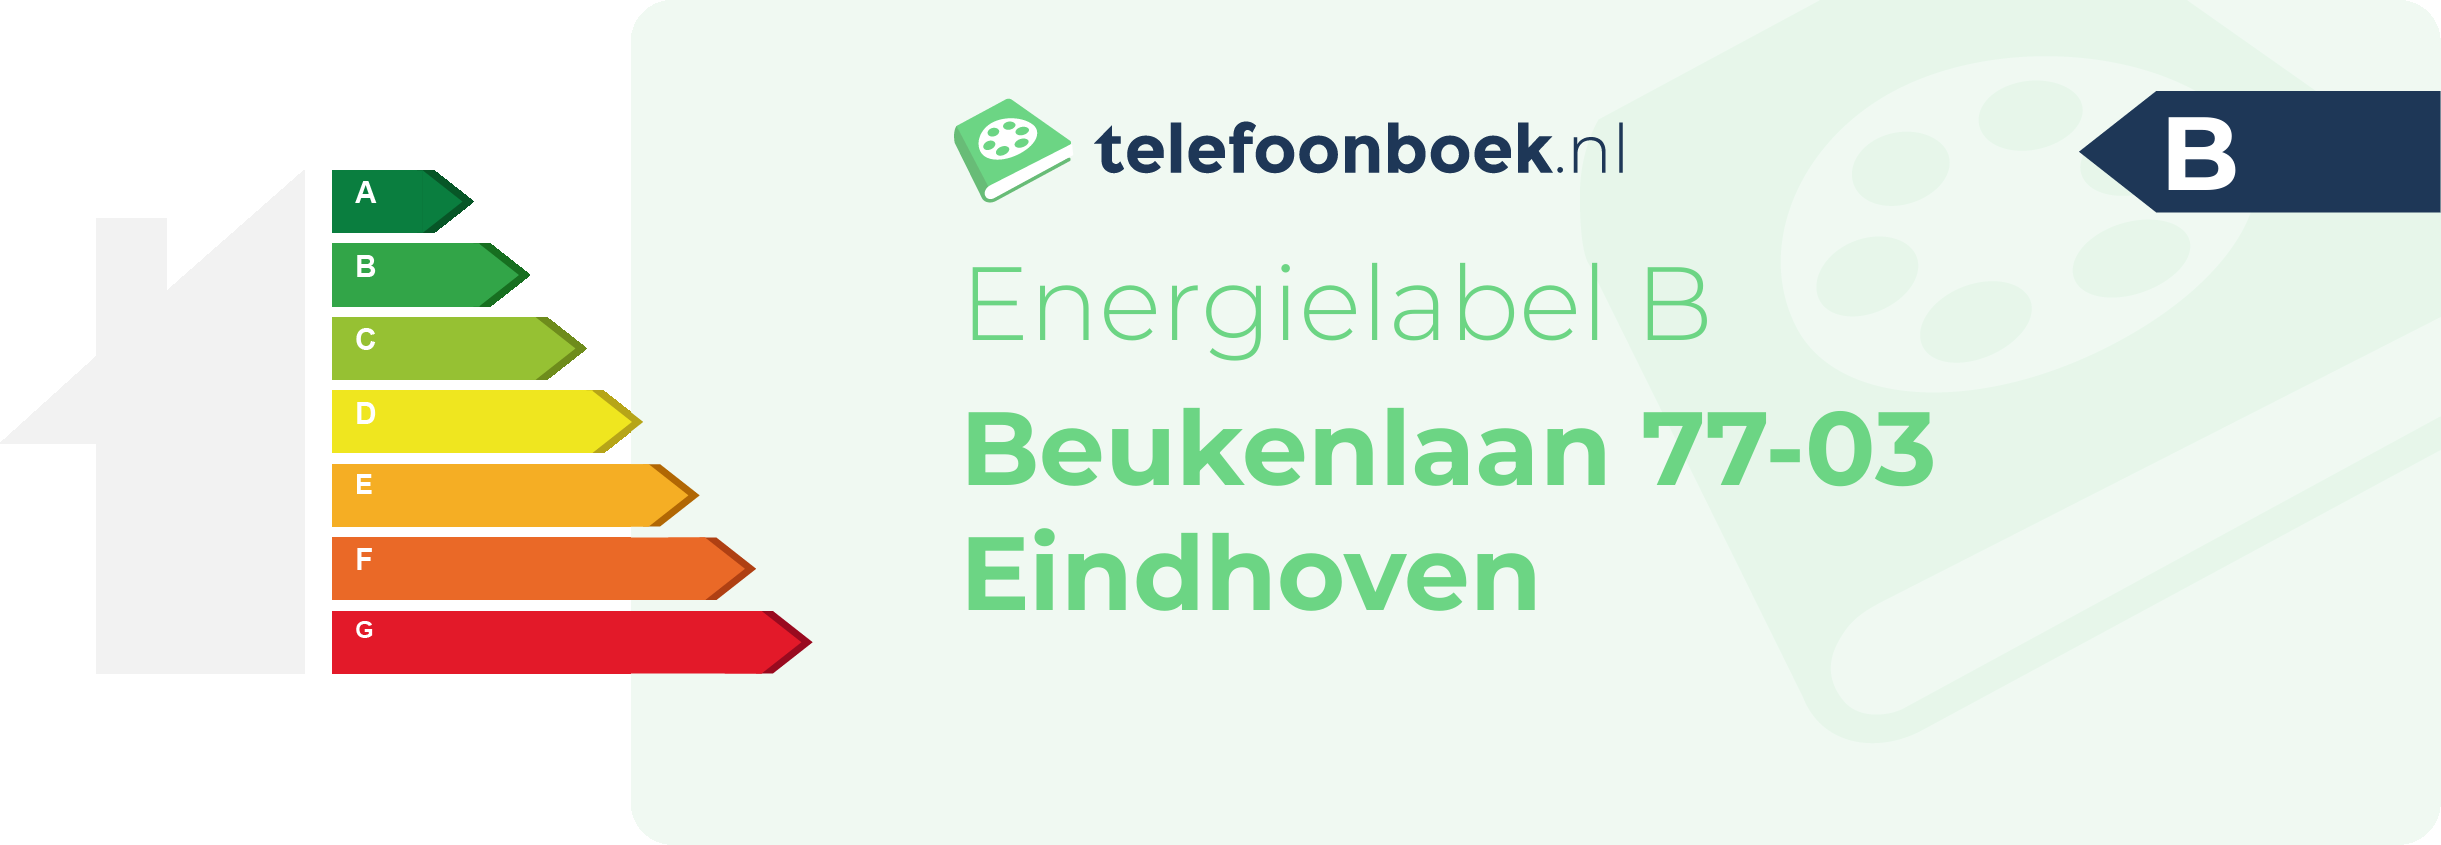 Energielabel Beukenlaan 77-03 Eindhoven